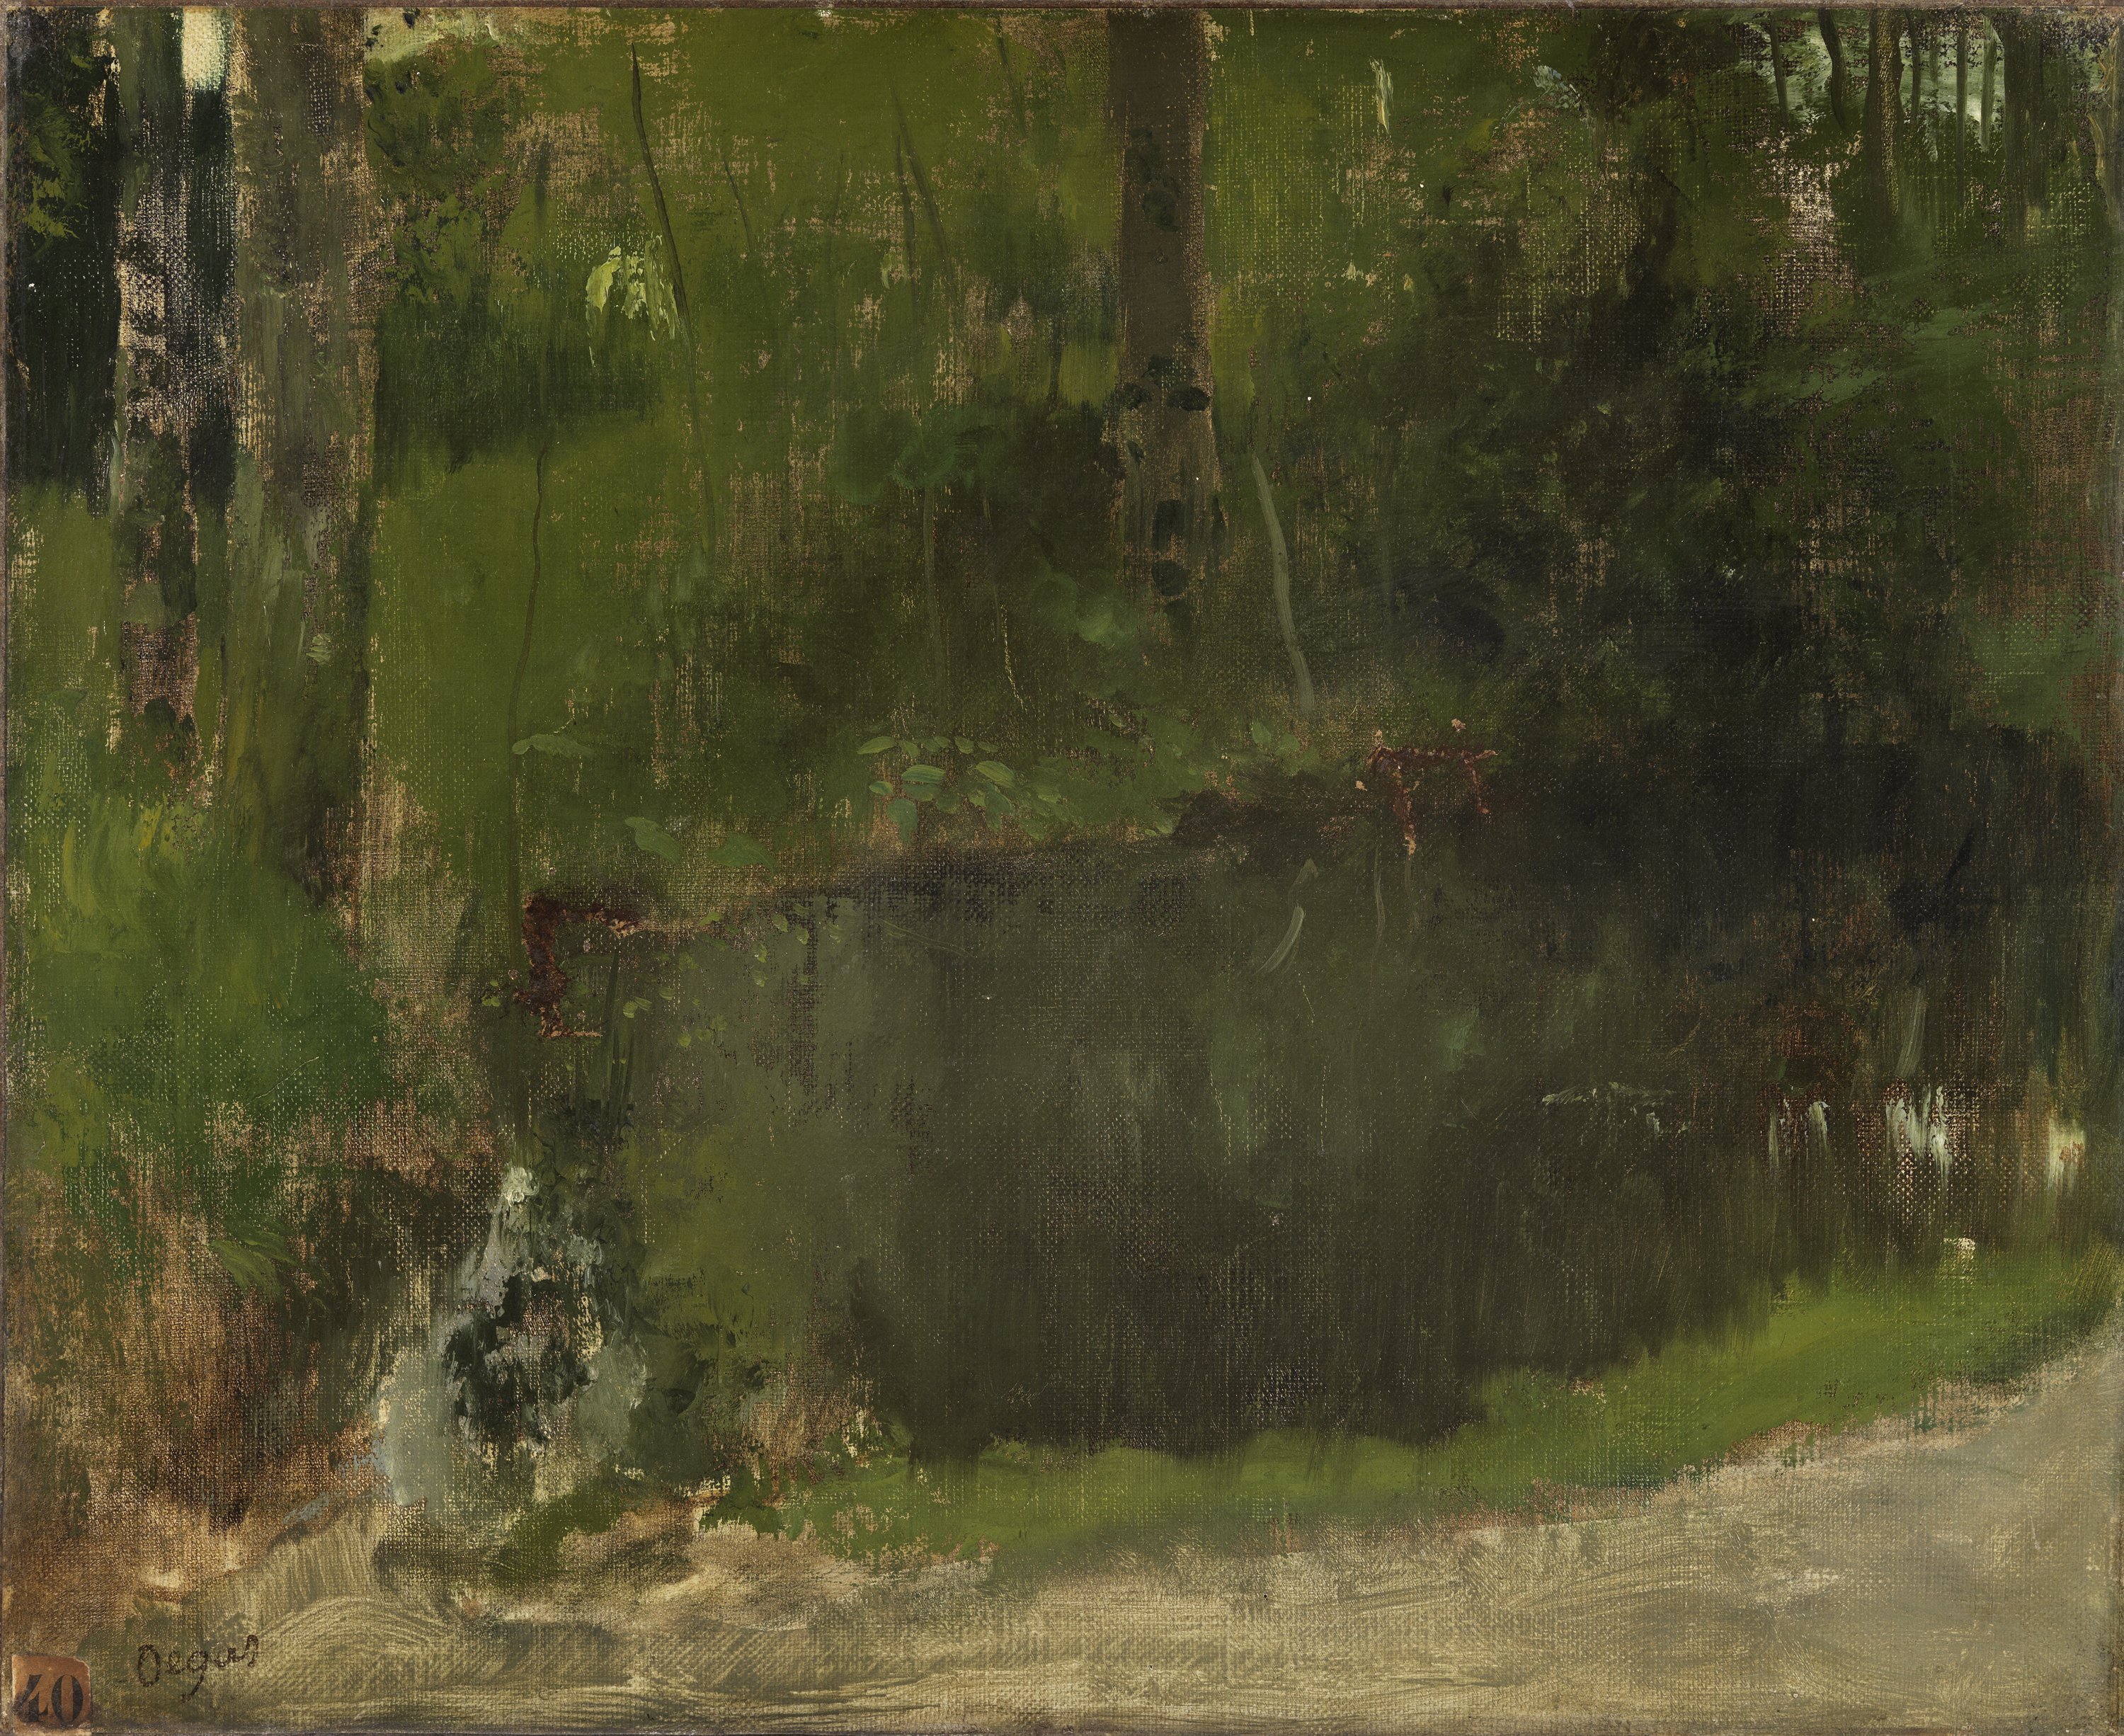 The Pond in the Forest. El estanque en el bosque, c. 1867-1868